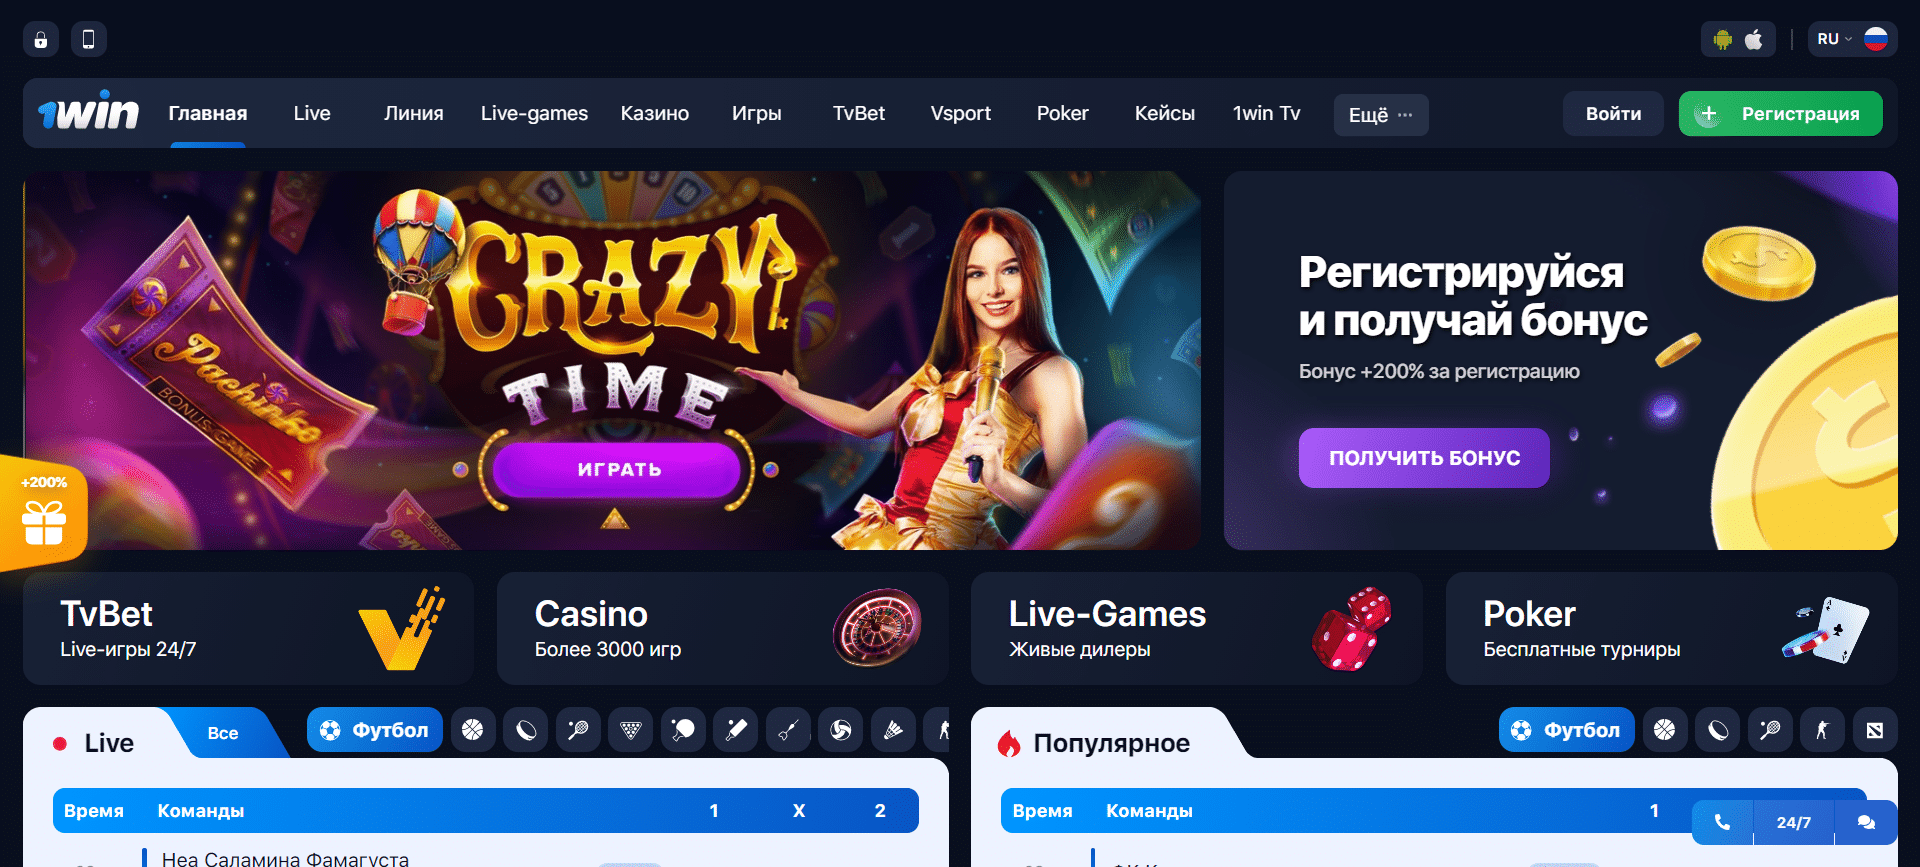 Проверенные казино онлайн rating casino ru win скрипт игровых автоматов